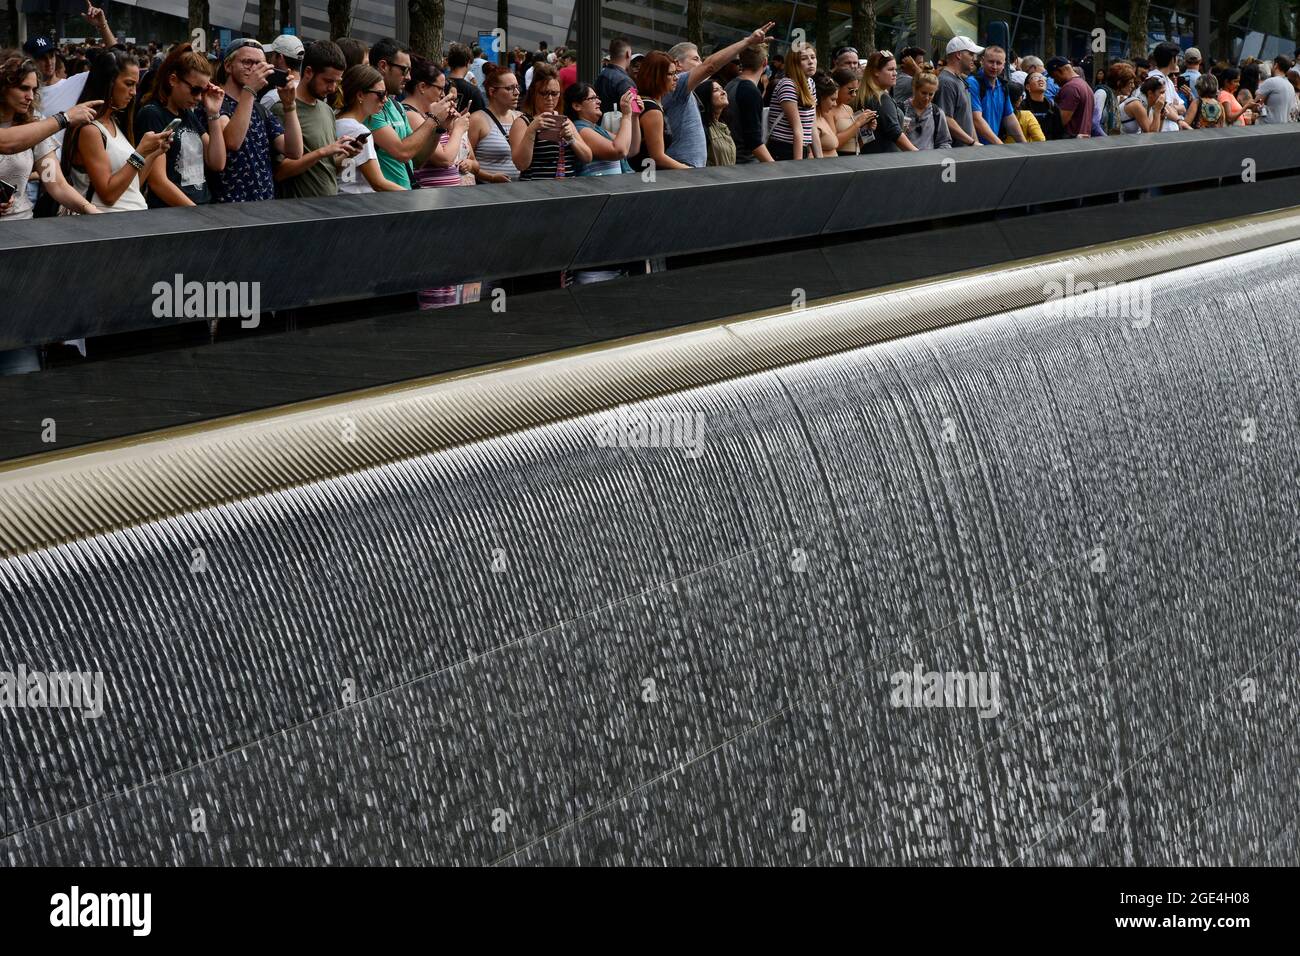 USA, New York City, 9/11 Gedenkstätte Ground Zero zur Erinnerung an die Opfer des Terroranschlags vom 11. September 2001 am Turm des Welthandelszentrums, Wasserbecken, reflektierendes Becken, fließendes Wasser, Wasserfall Stockfoto